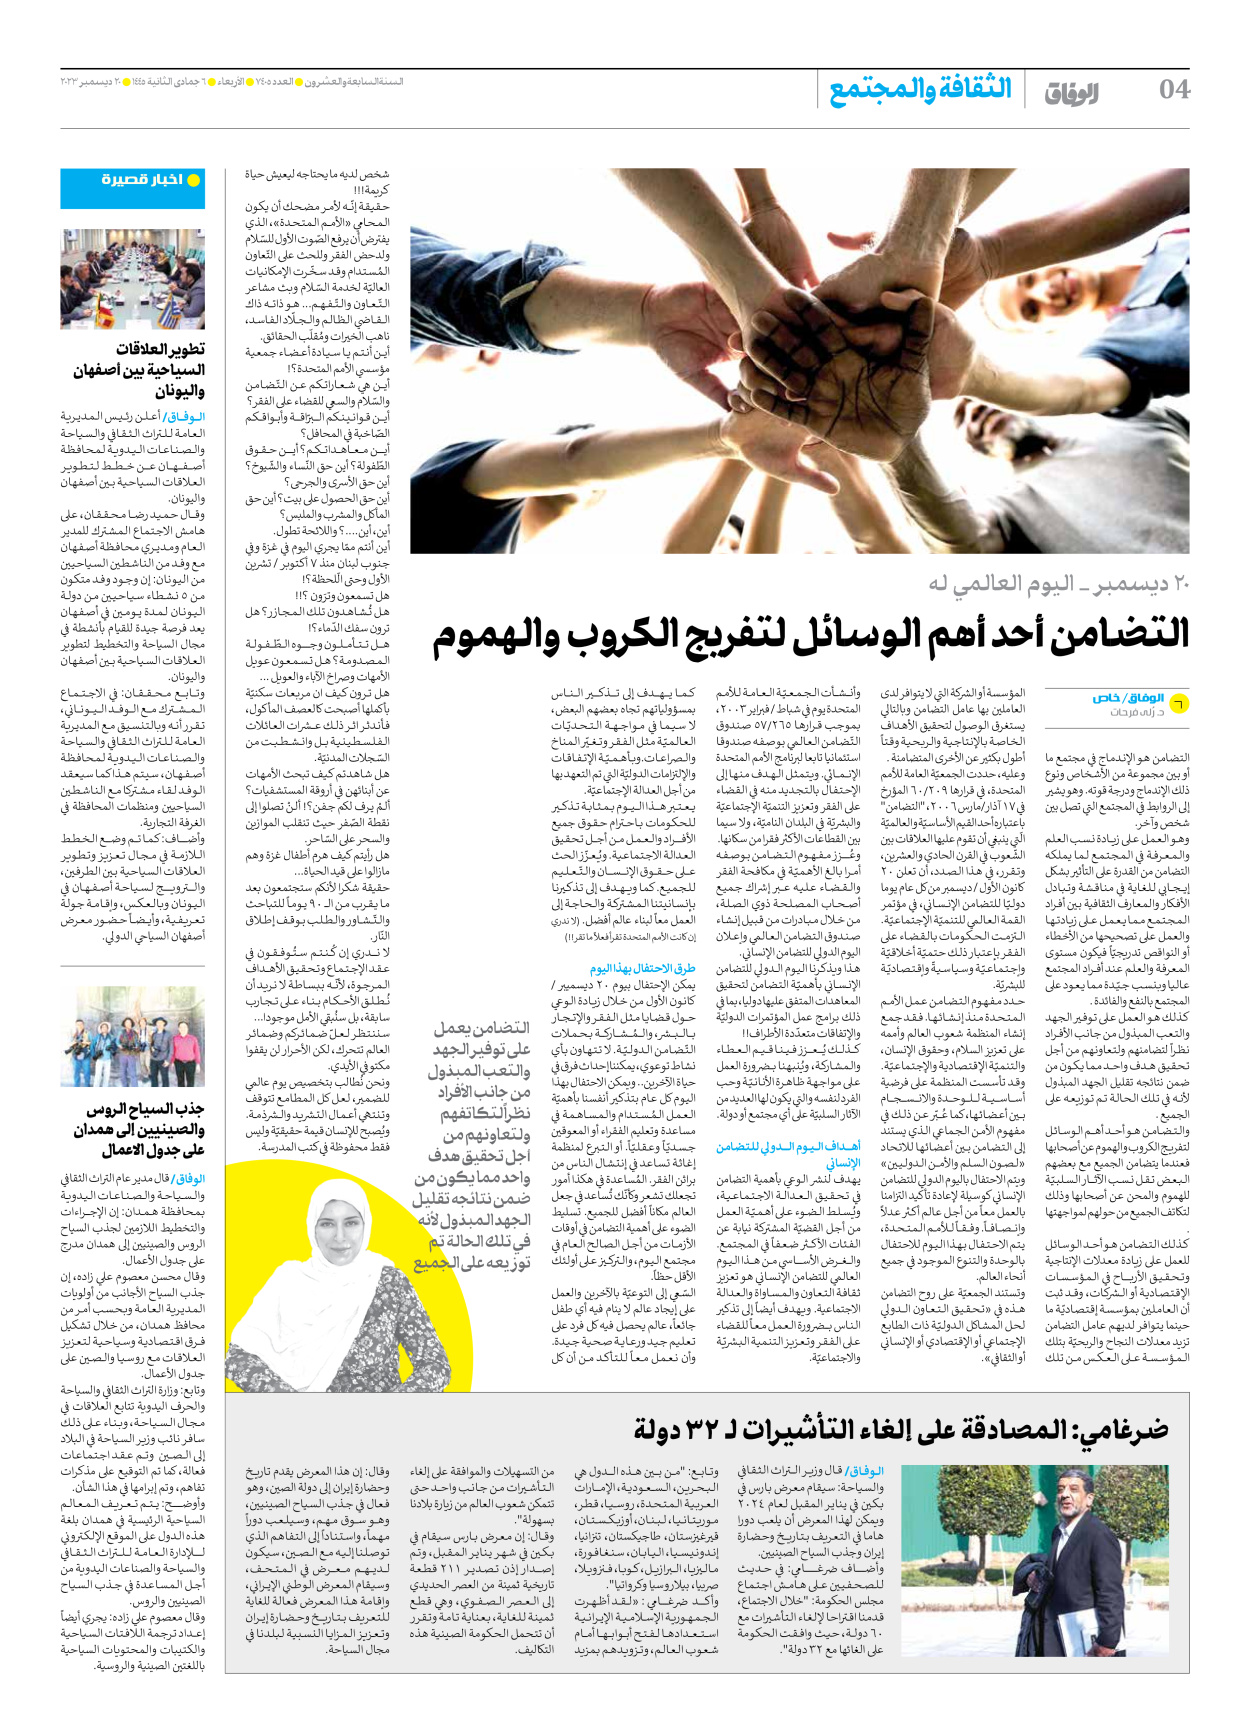 صحیفة ایران الدولیة الوفاق - العدد سبعة آلاف وأربعمائة وخمسة - ٢٠ ديسمبر ٢٠٢٣ - الصفحة ٤